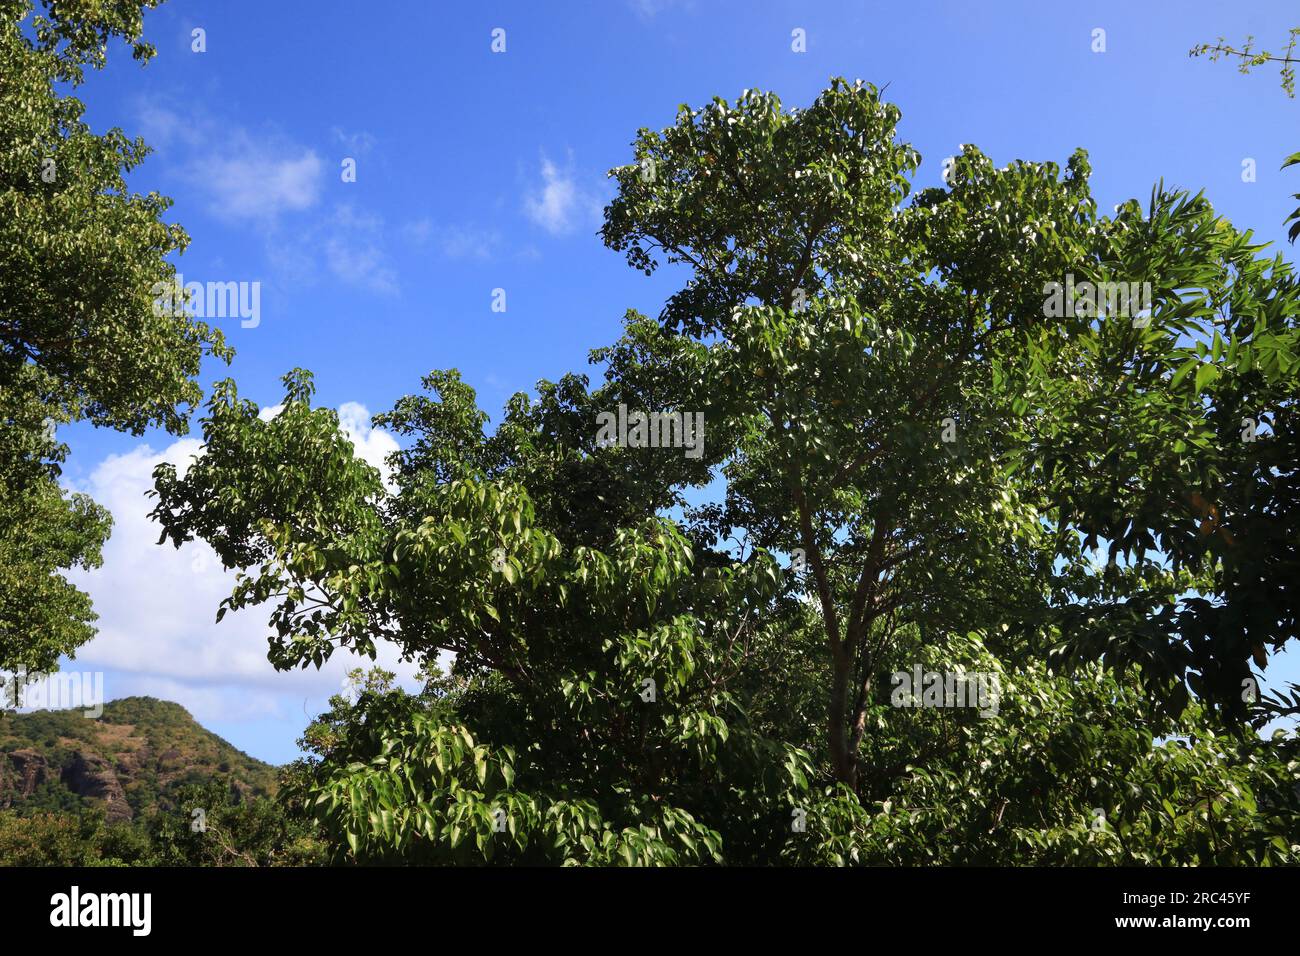 Manchineelbaum (Hippomane mancinella) Arten in der Karibik. Gefährlicher giftiger Baum. Alle Teile des Baumes sind giftig oder giftig. Stockfoto